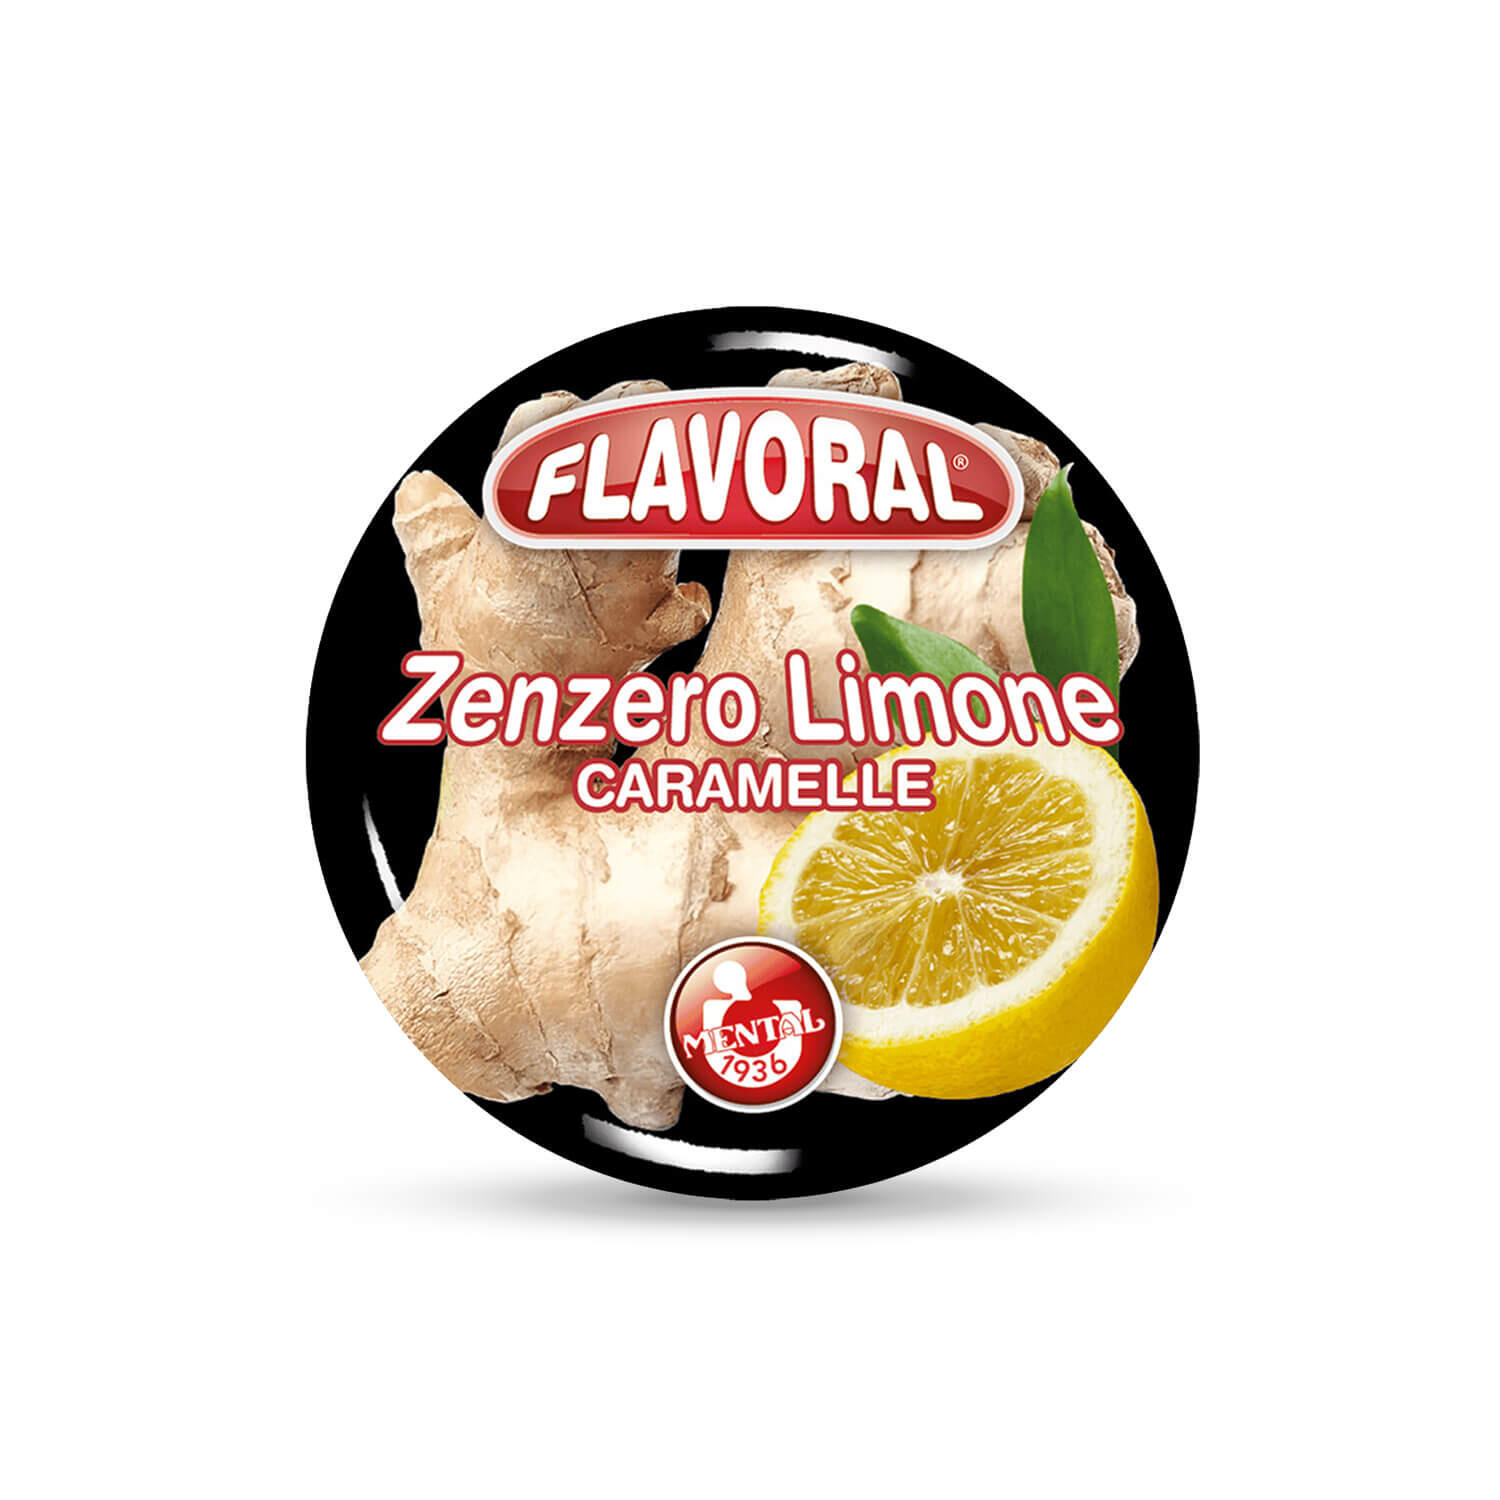 Flavoral Zenzero Limone - Confezione da 16PZ - Flavoral